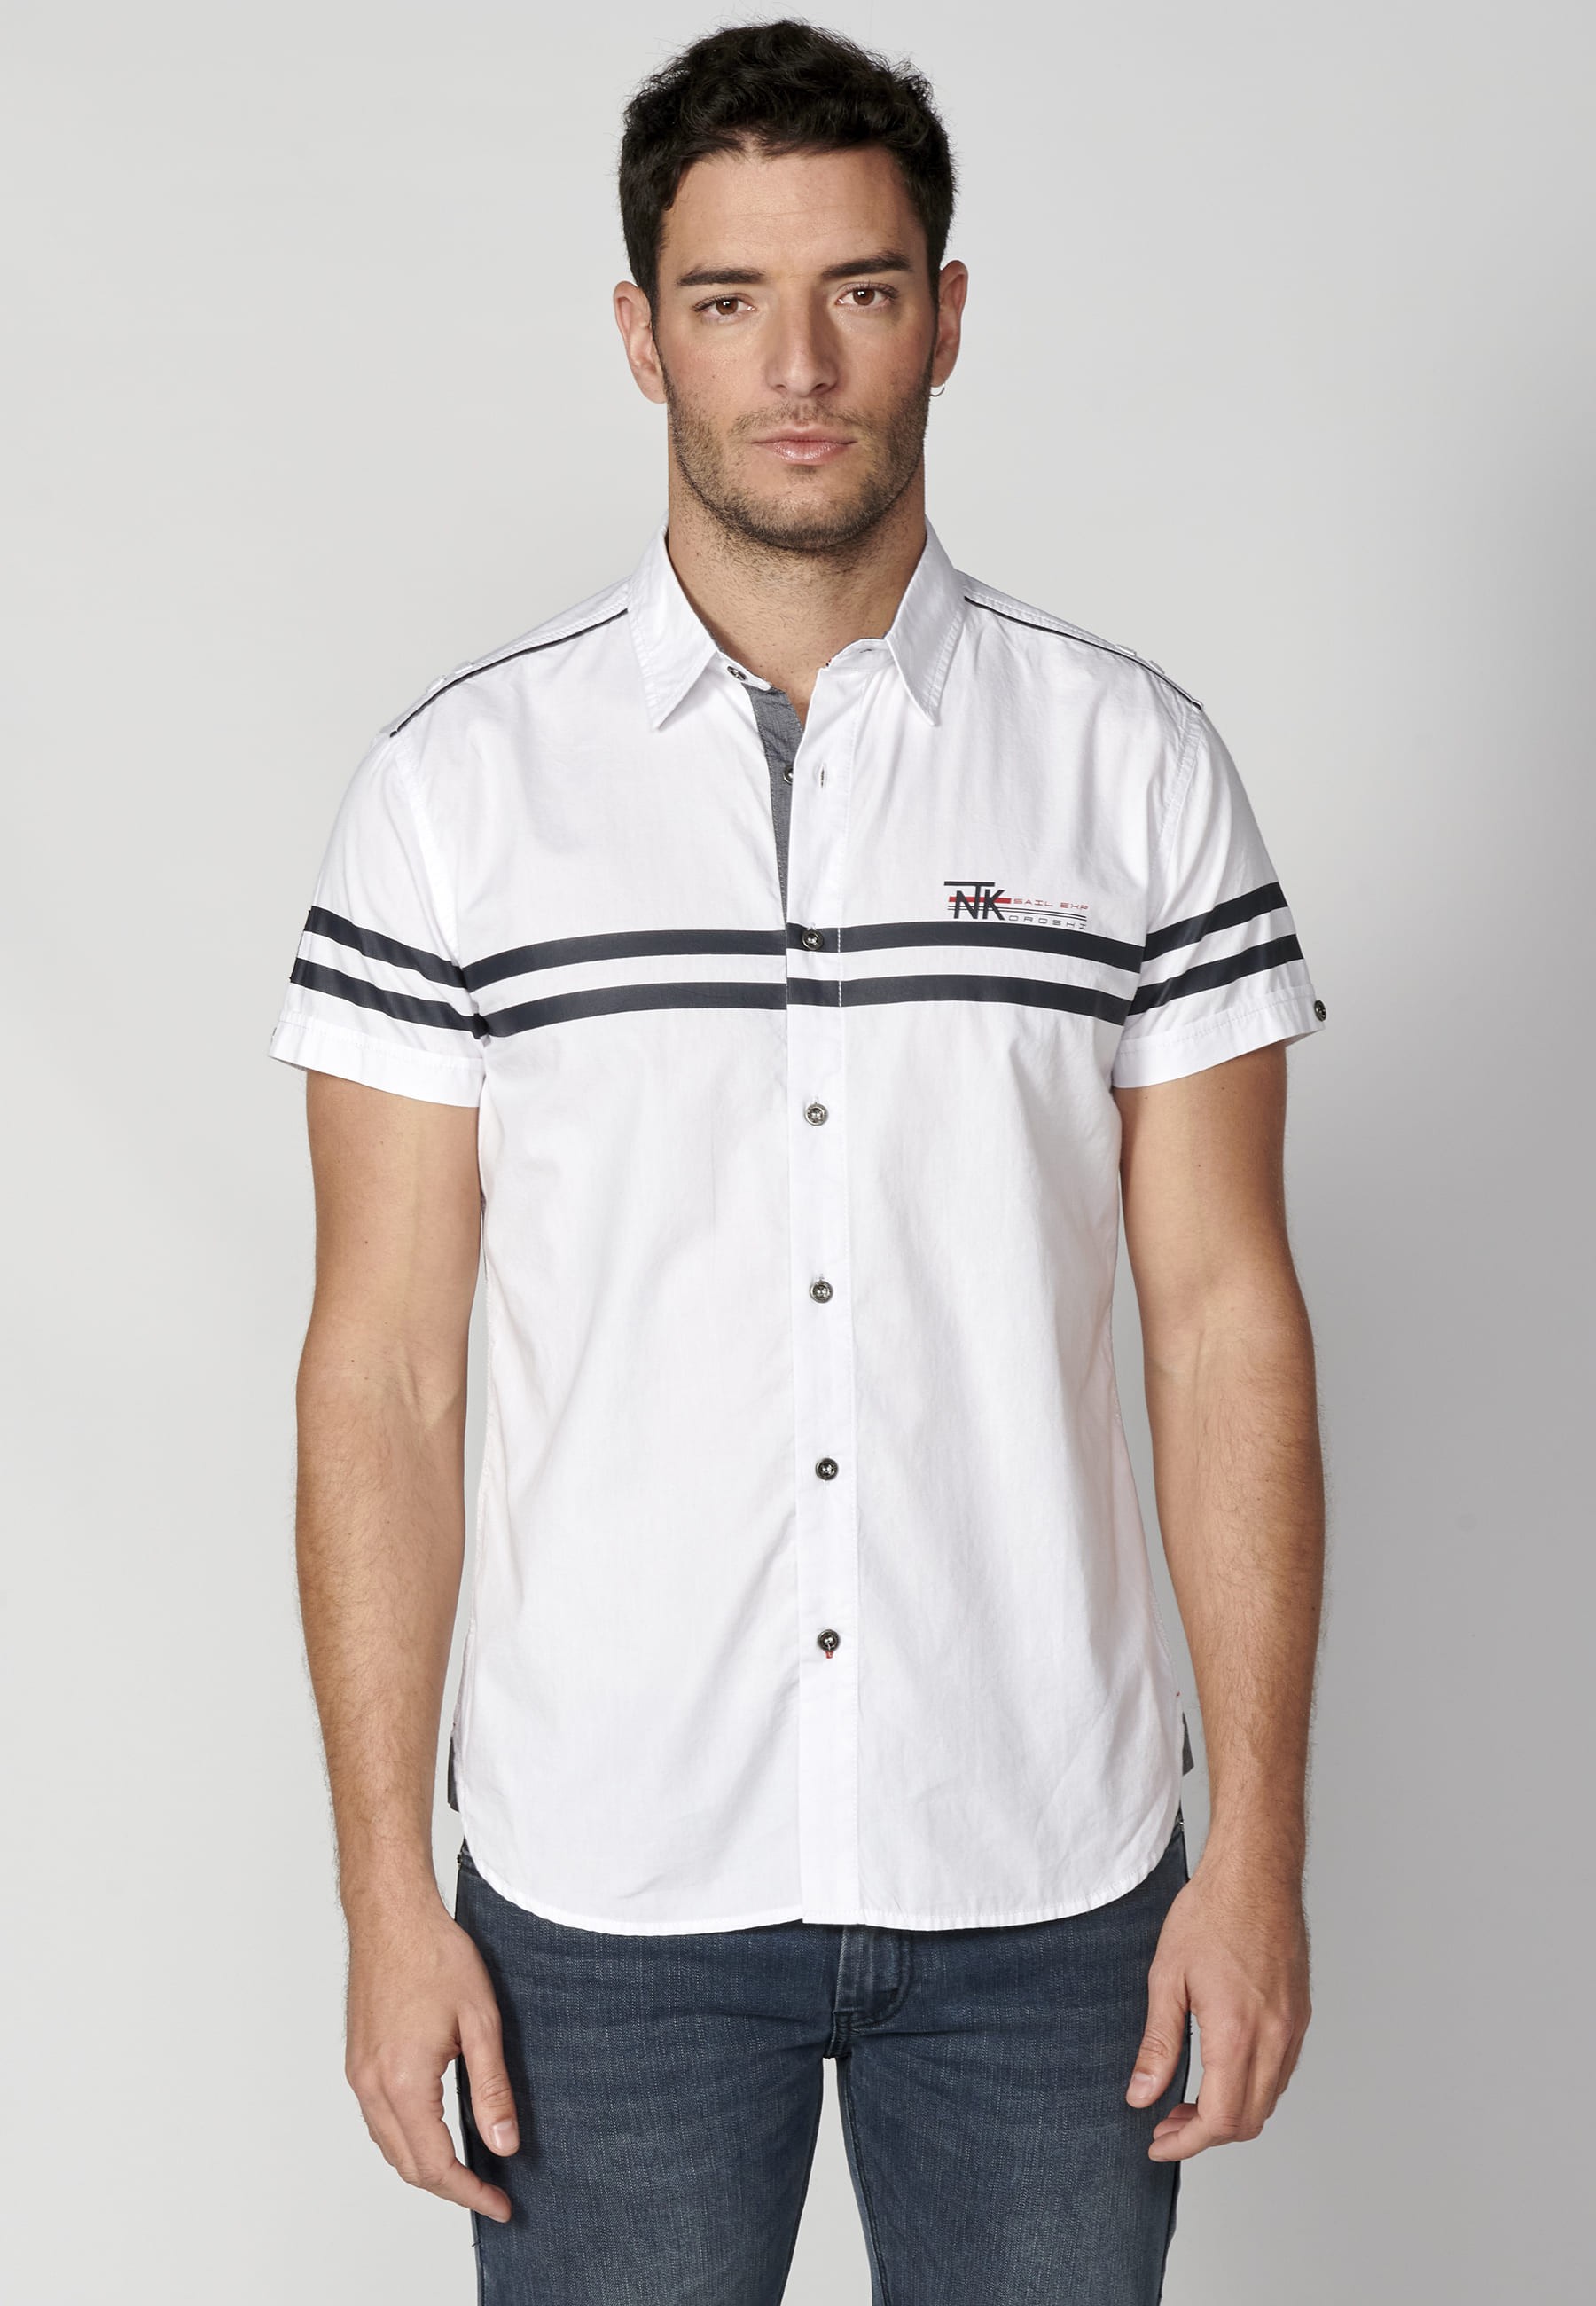 White cotton short-sleeved shirt for Men 7